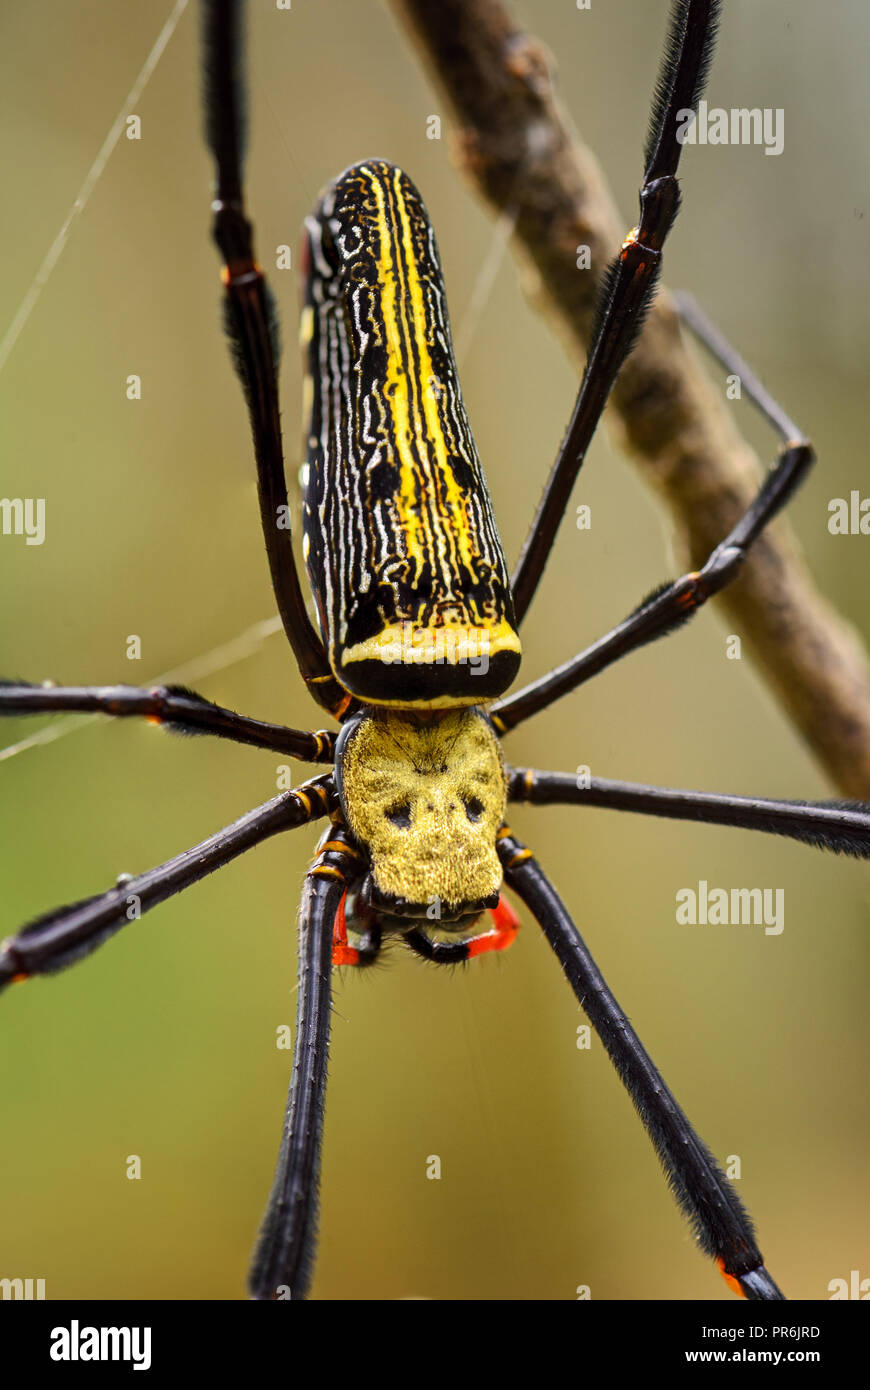 Riese - Nephila pilipes Woodspider, große bunte Spinne aus Südostasien Wälder und Forsten. Stockfoto